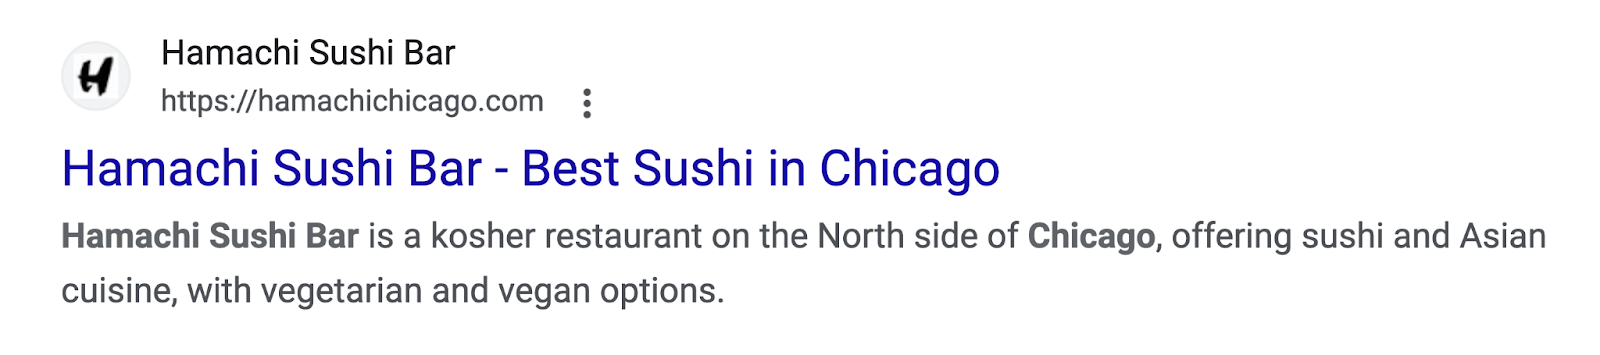 Hamachi Sushi Bar - Best Sushi in Chicago